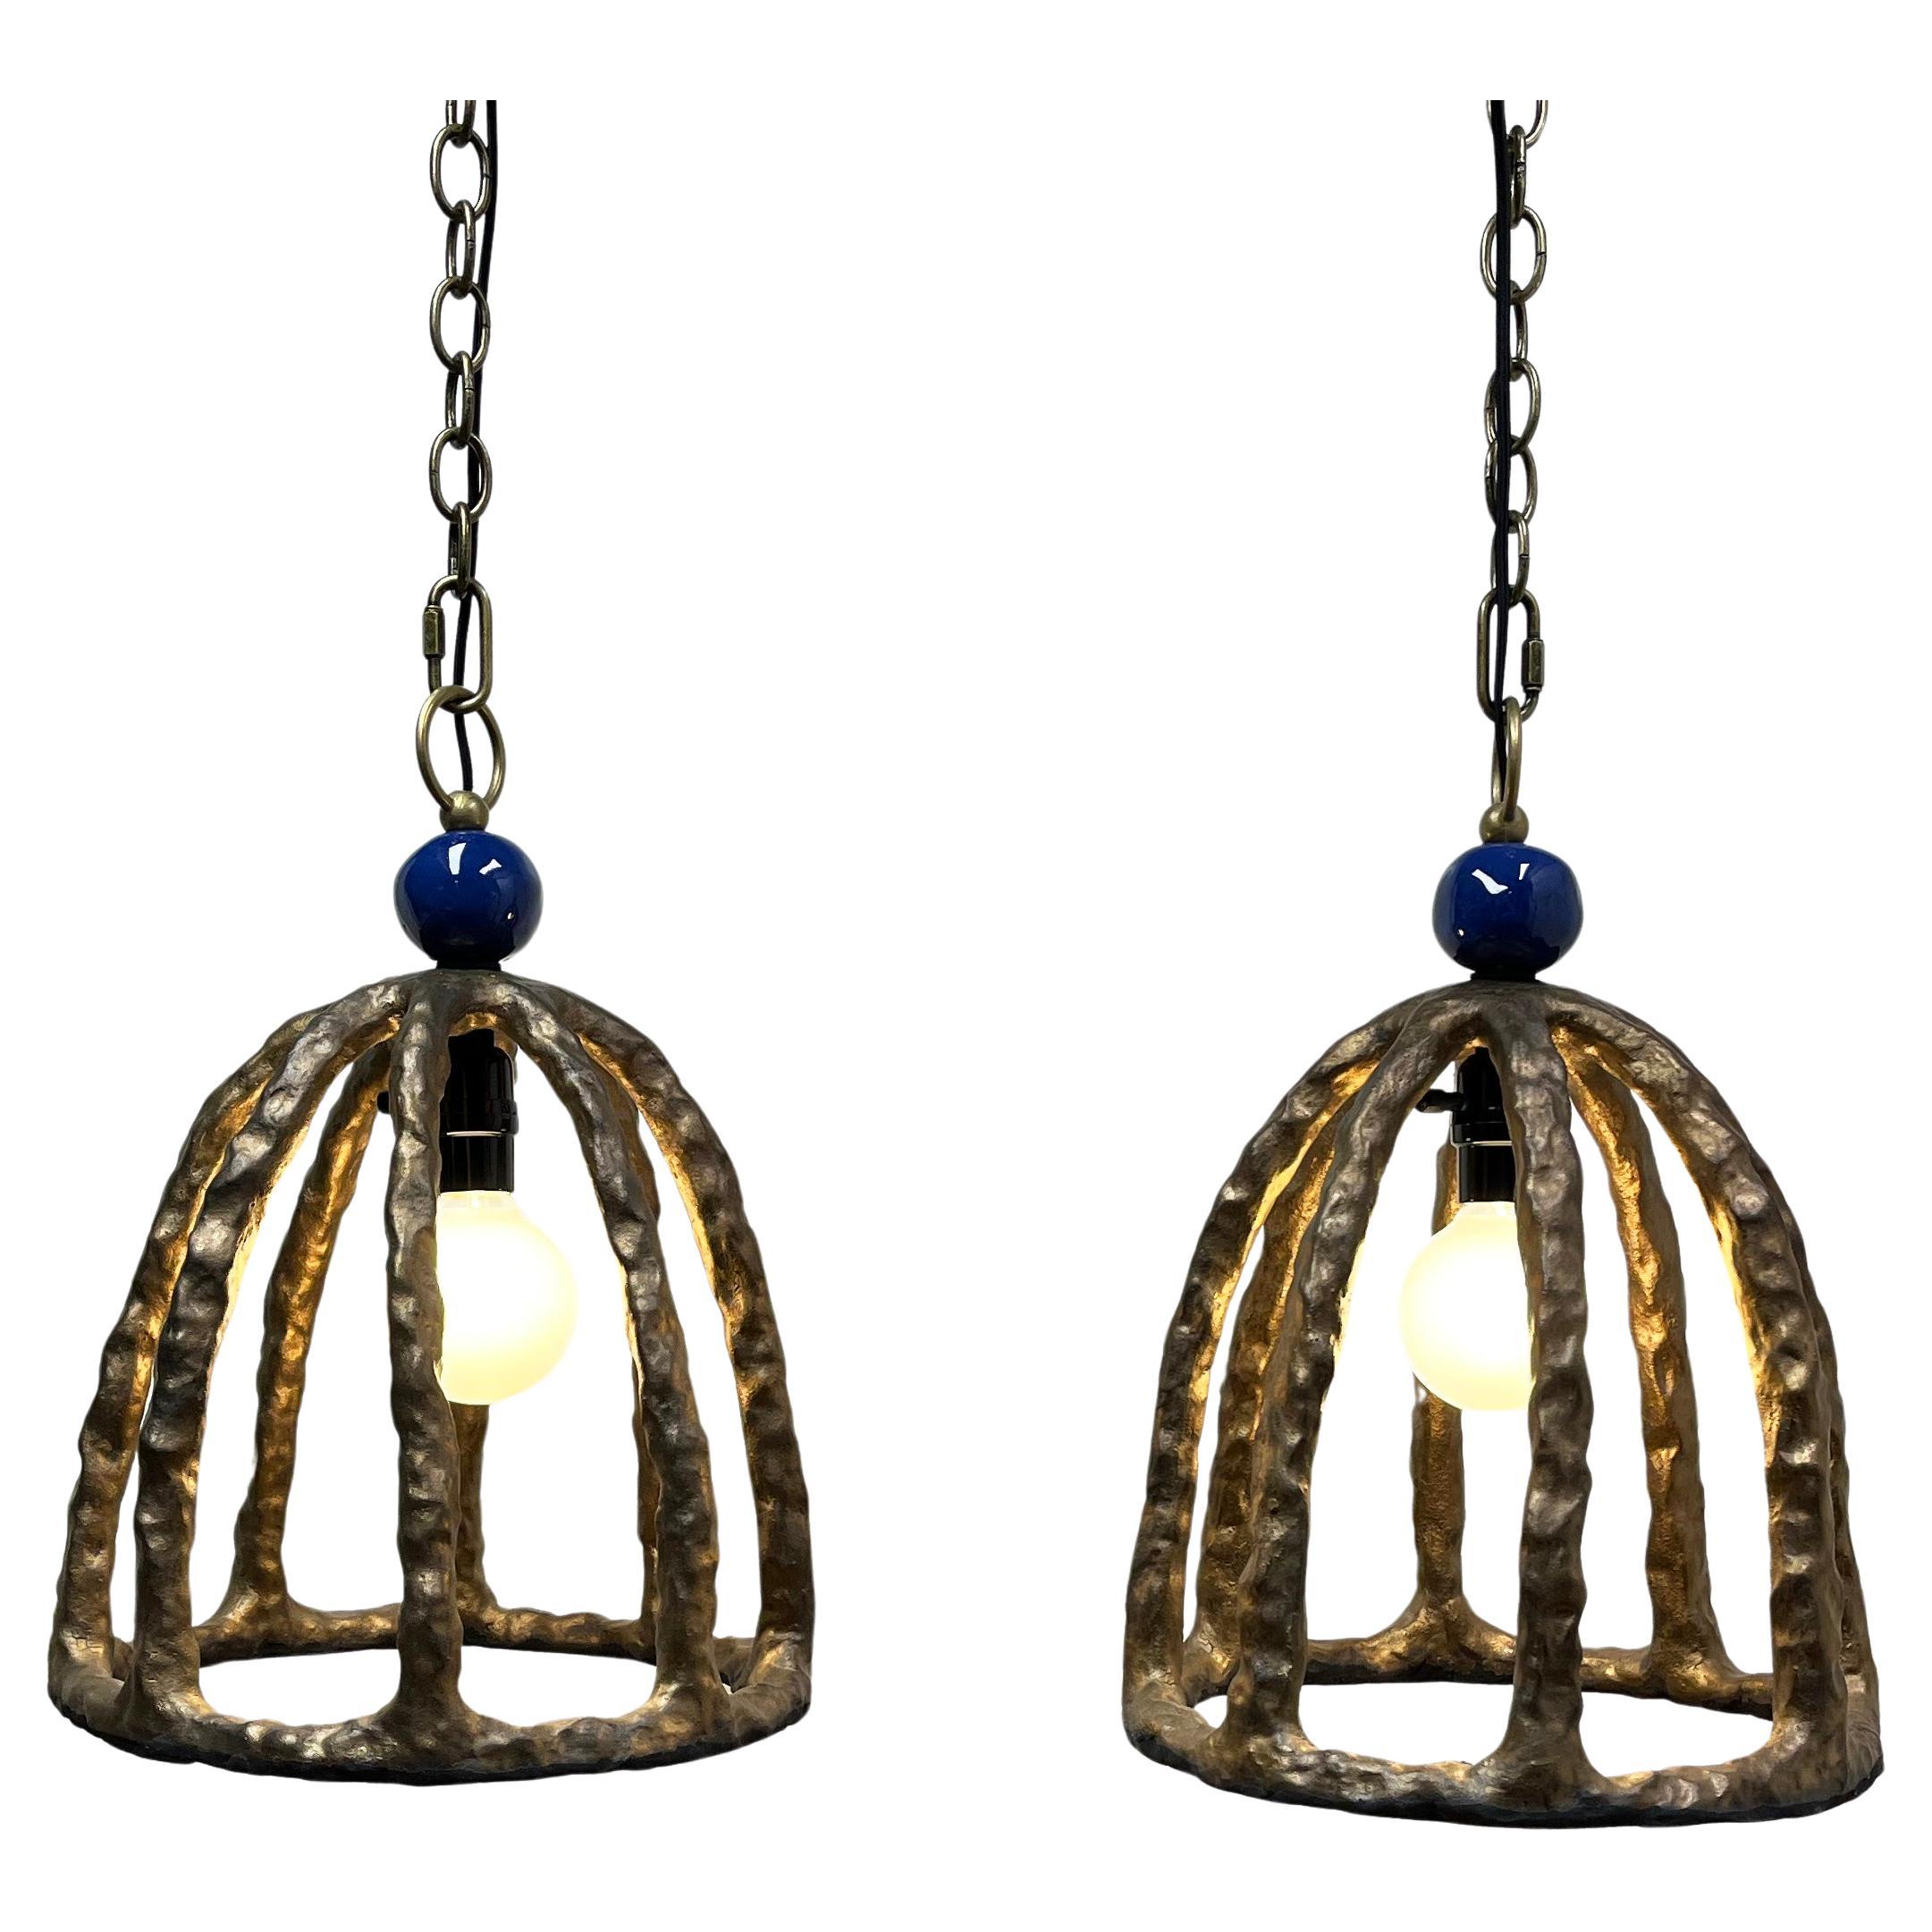 Die Birdcage Lamp ist ein Unikat oder Prototyp aus dem Projektarchiv. Sie wird aus hochgebranntem Steinzeug im Stil einer Giacometti-Skulptur hergestellt. Er kann hängen oder auf einer Oberfläche liegen. 3' Kette wird mit jedem Anhänger geliefert.